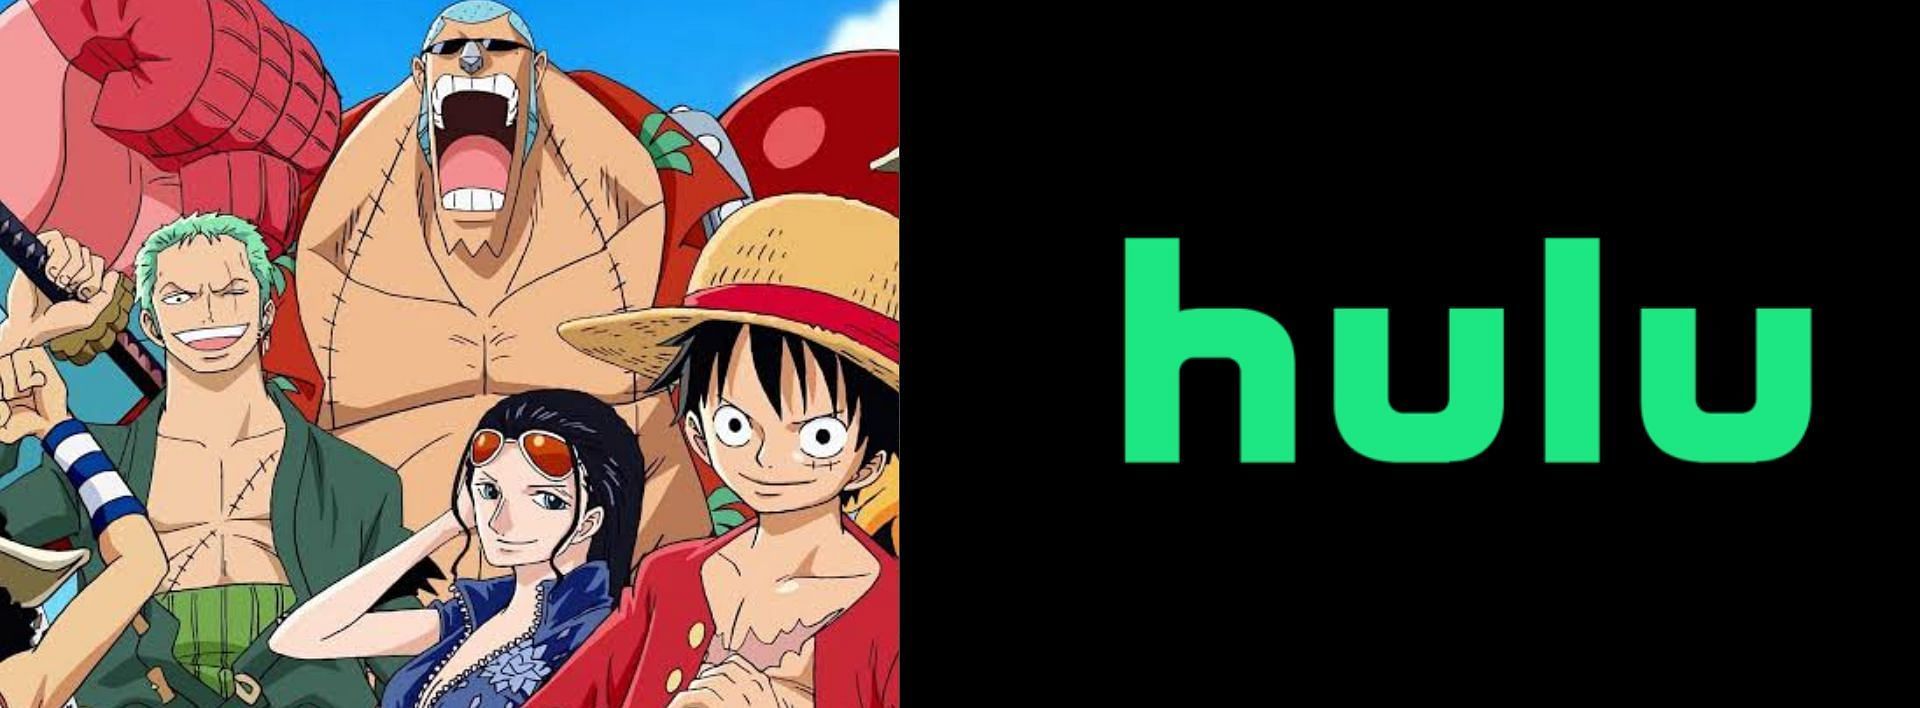 One Piece could leave Hulu (Image via Sportskeeda)